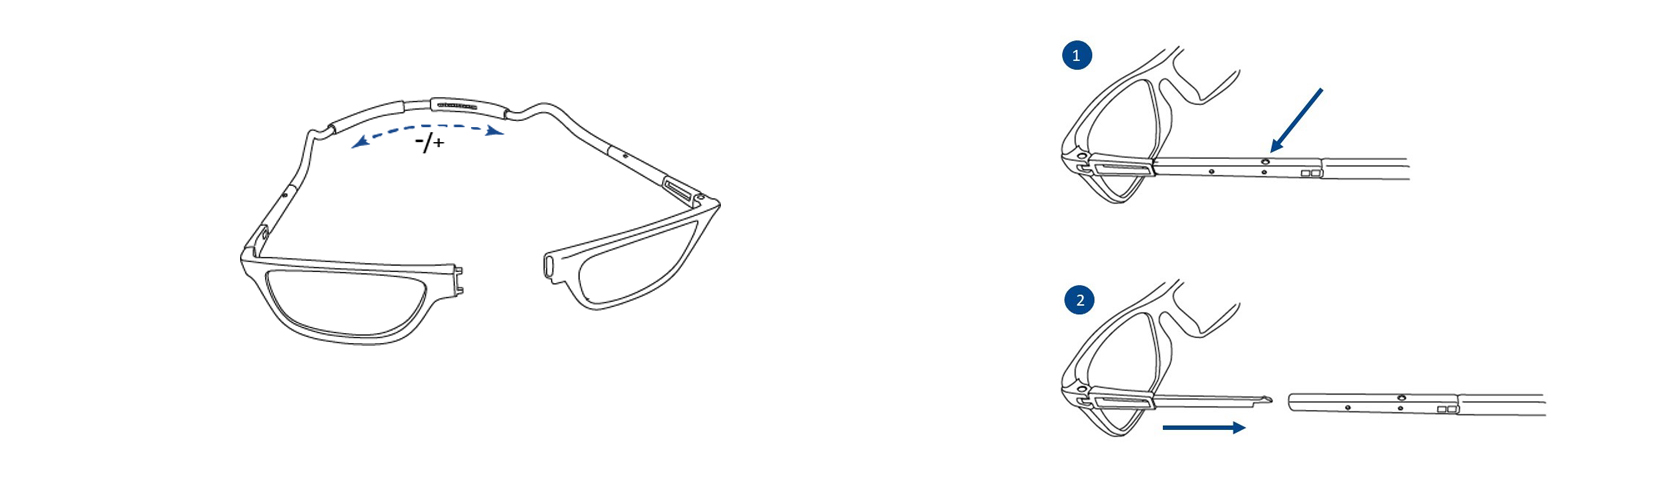 Bande flexible pour lunettes de lecture: instructions